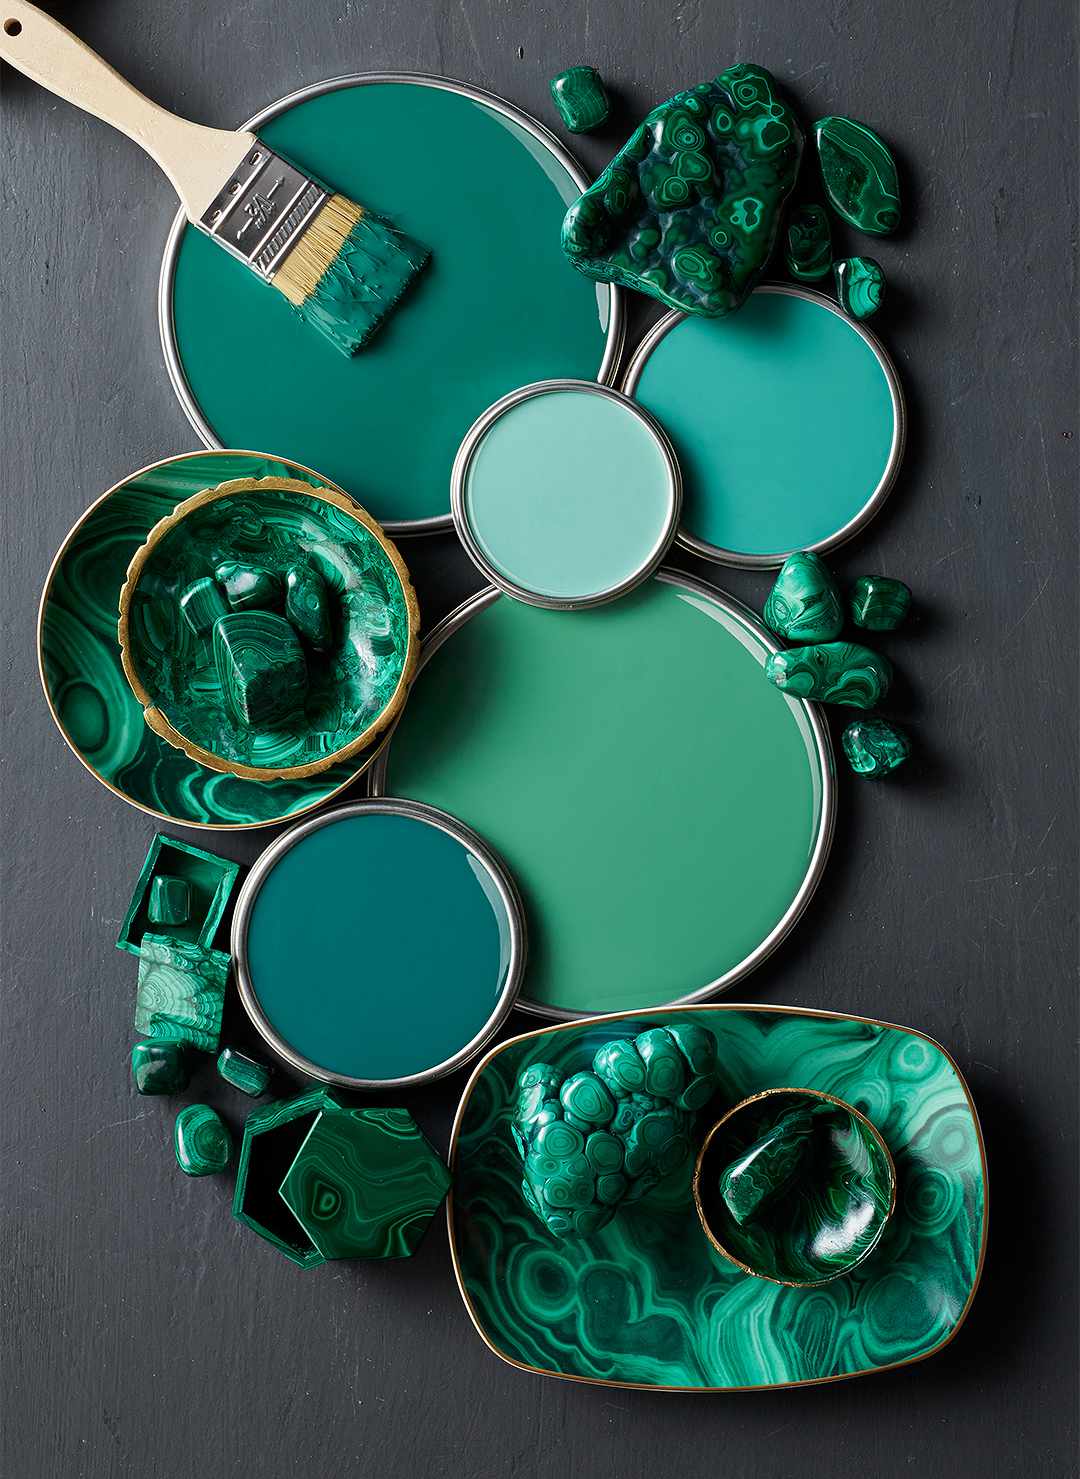 deep-green-paint-lids-b97a1a1b-2e6fd3f426de4d5bb78f42e5cf02b5a4.jpg